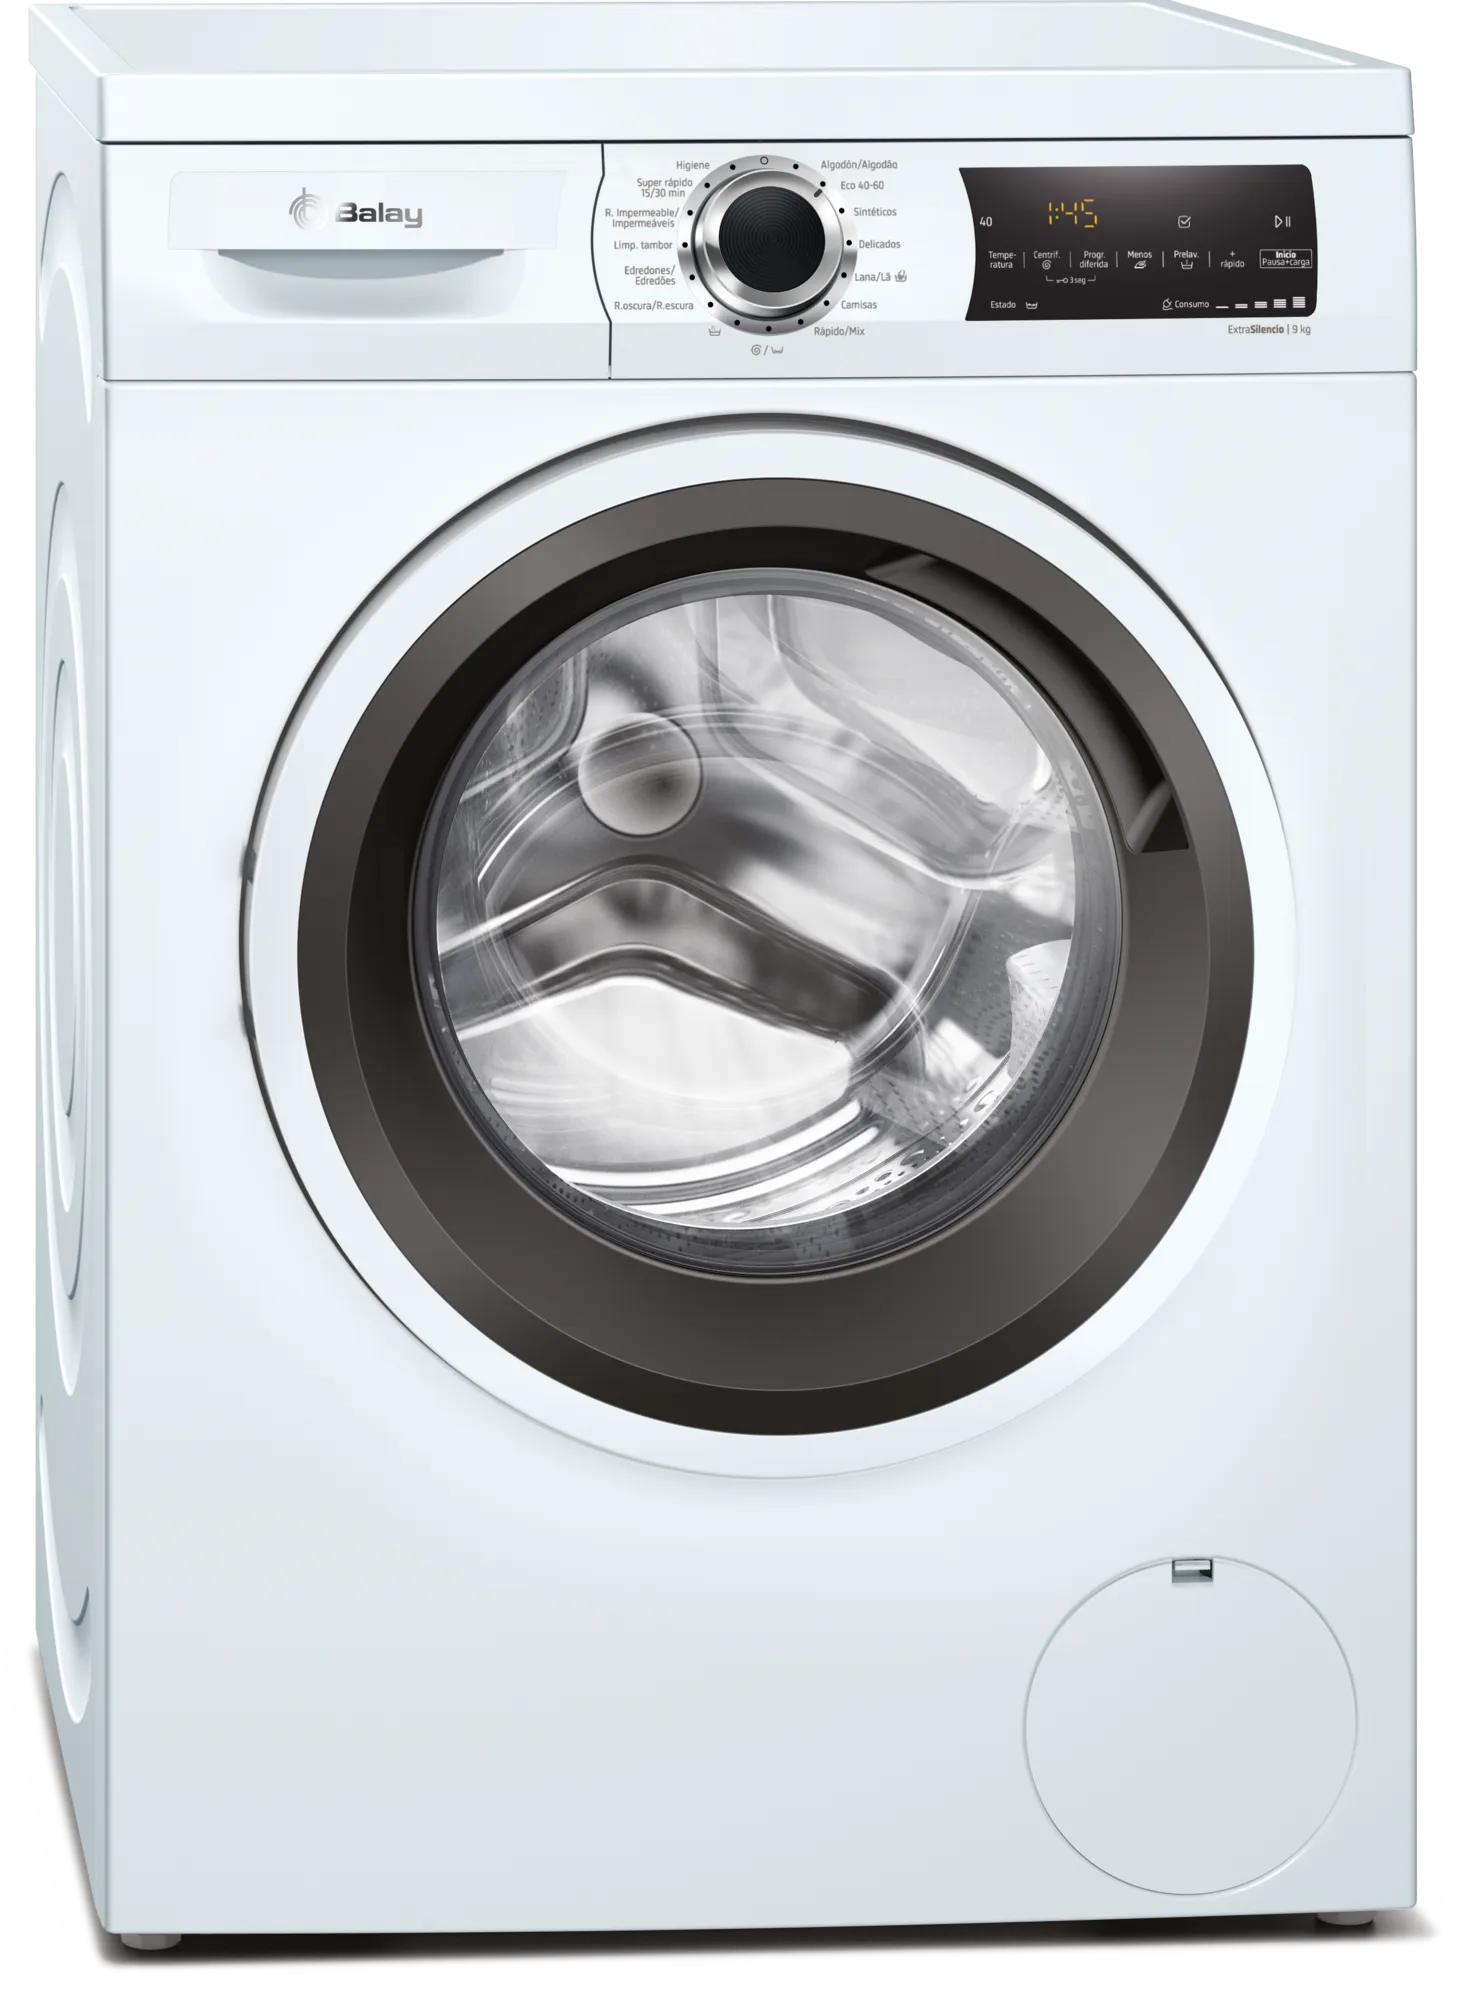 Comprar lavadora 3TS993XT 9kg | eduardsegui